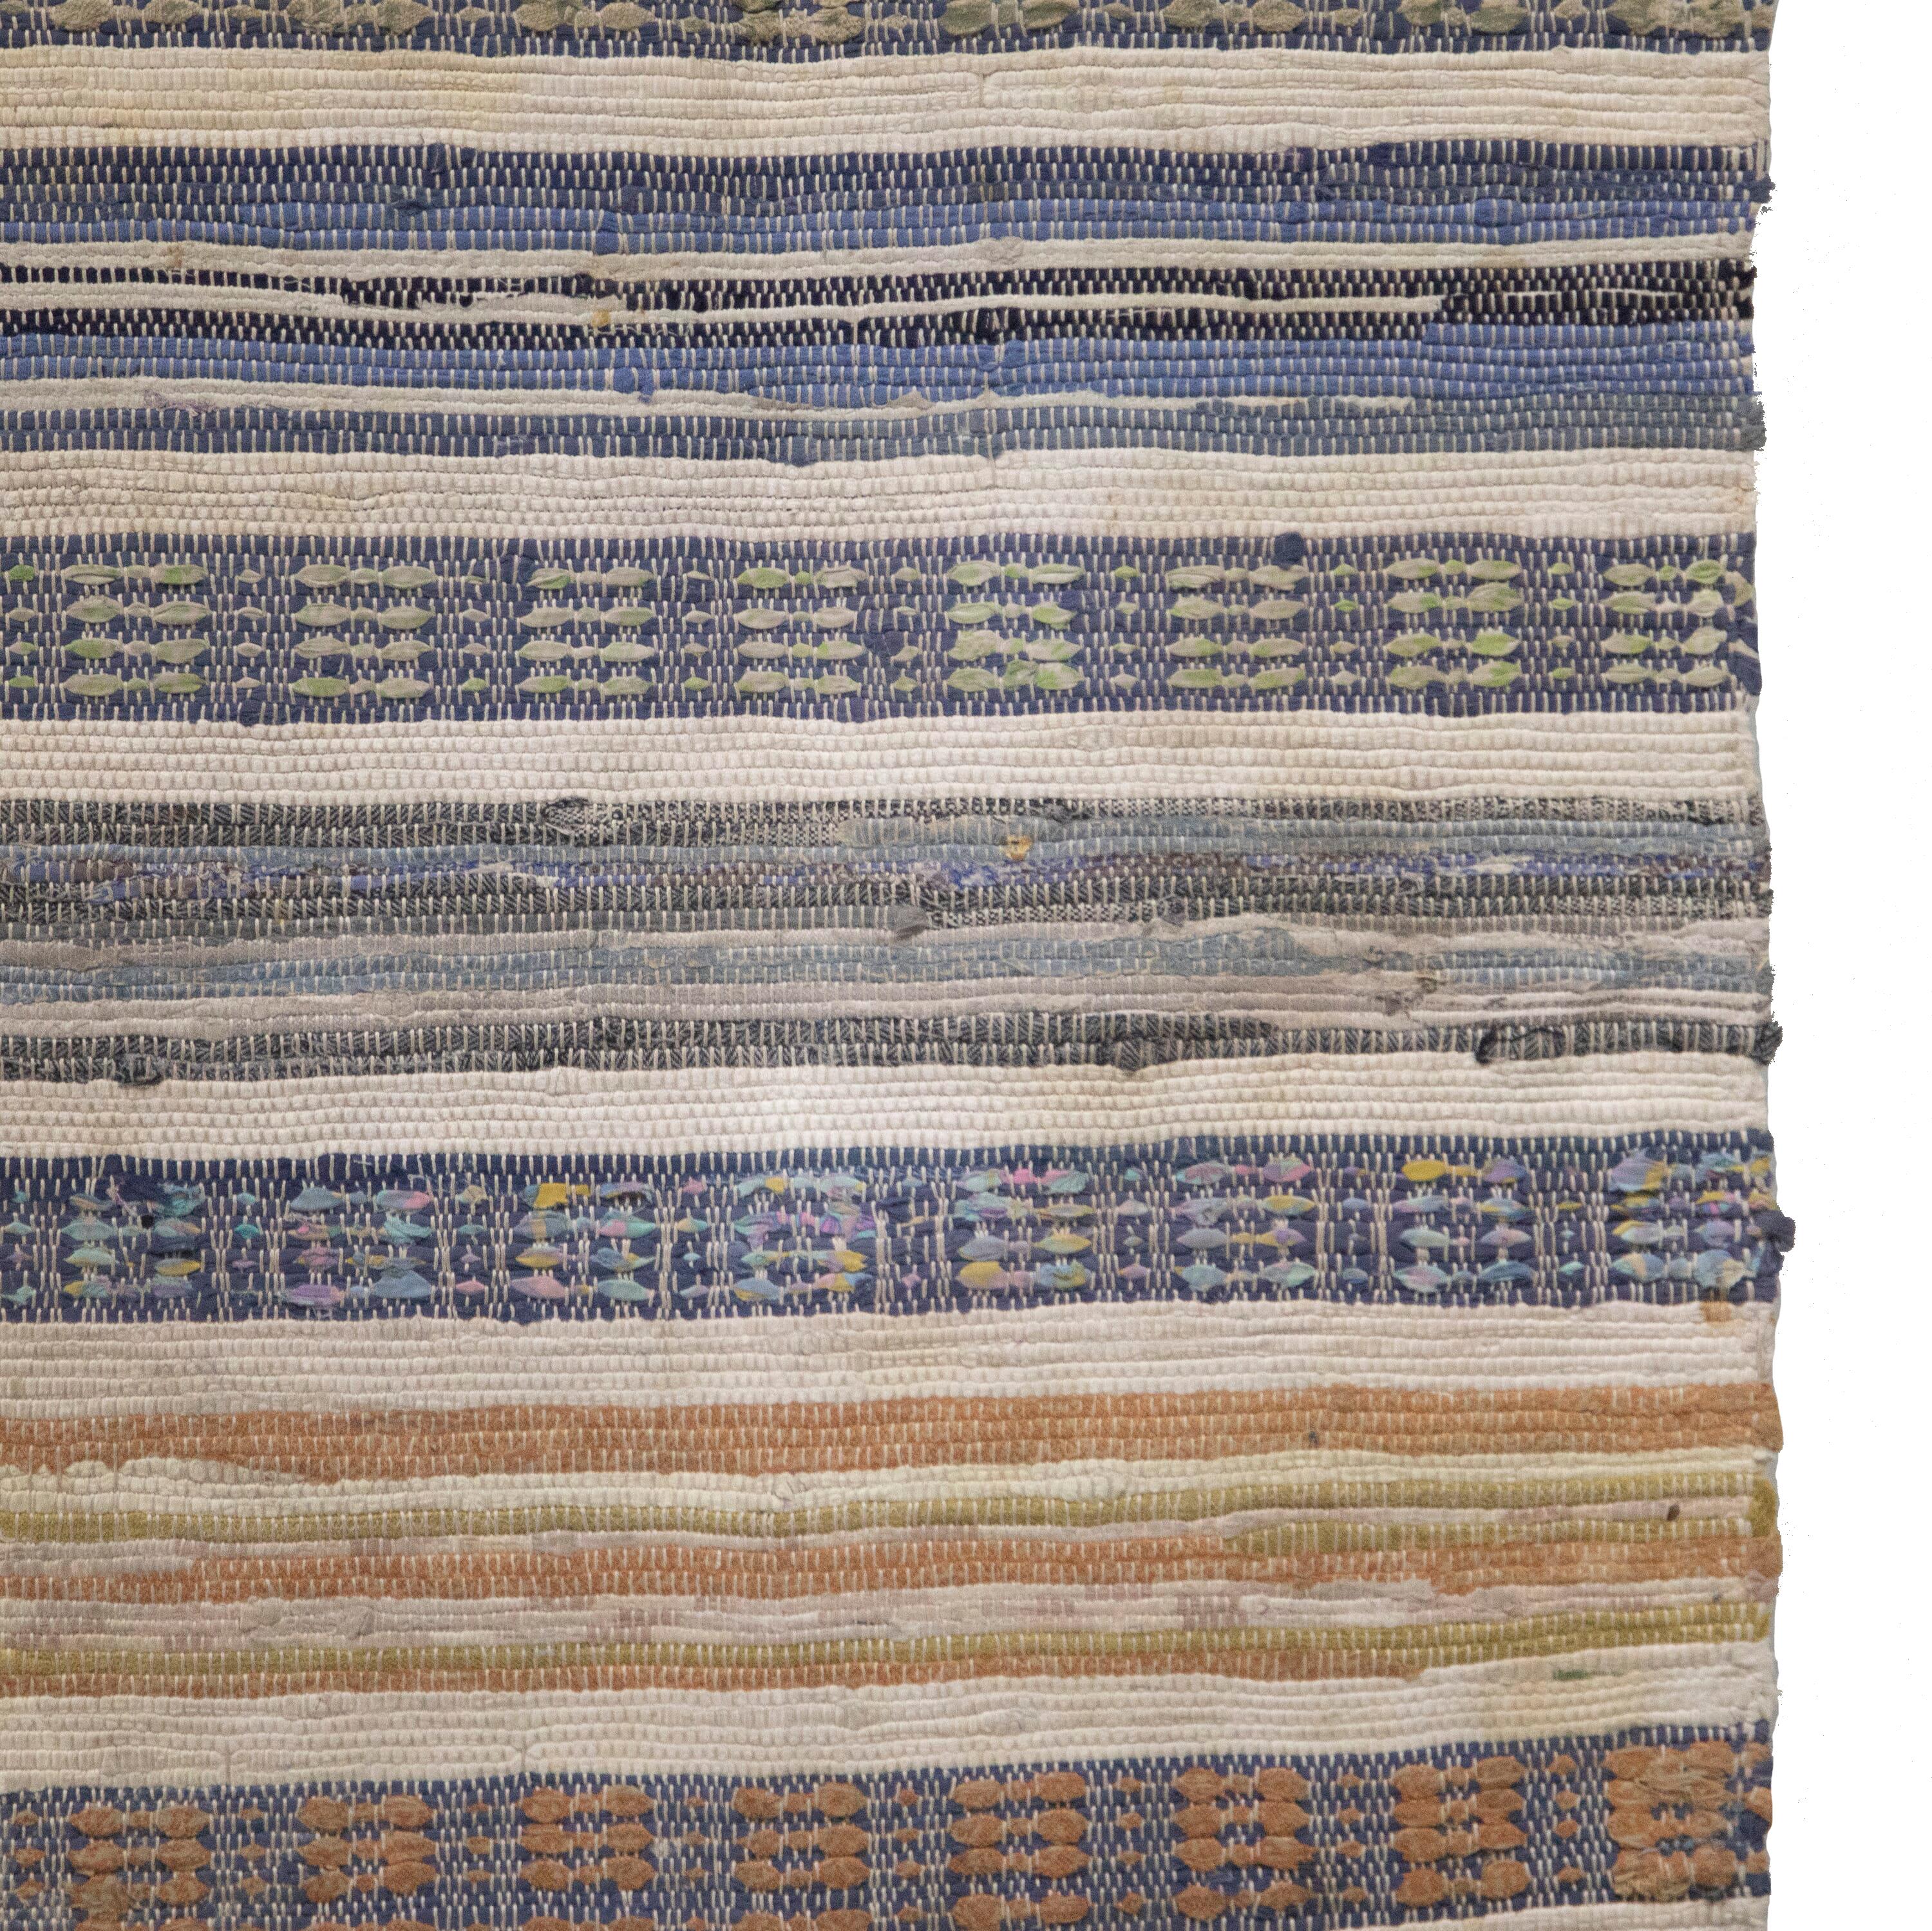 Schwedischer Flickenteppich des 20. Jahrhunderts.   Mit einem Streifendesign in Rosa-, Blau-, Grün- und Himbeertönen.   Dieser Teppich ist bei 30 Grad in der Maschine waschbar.
RT6024480